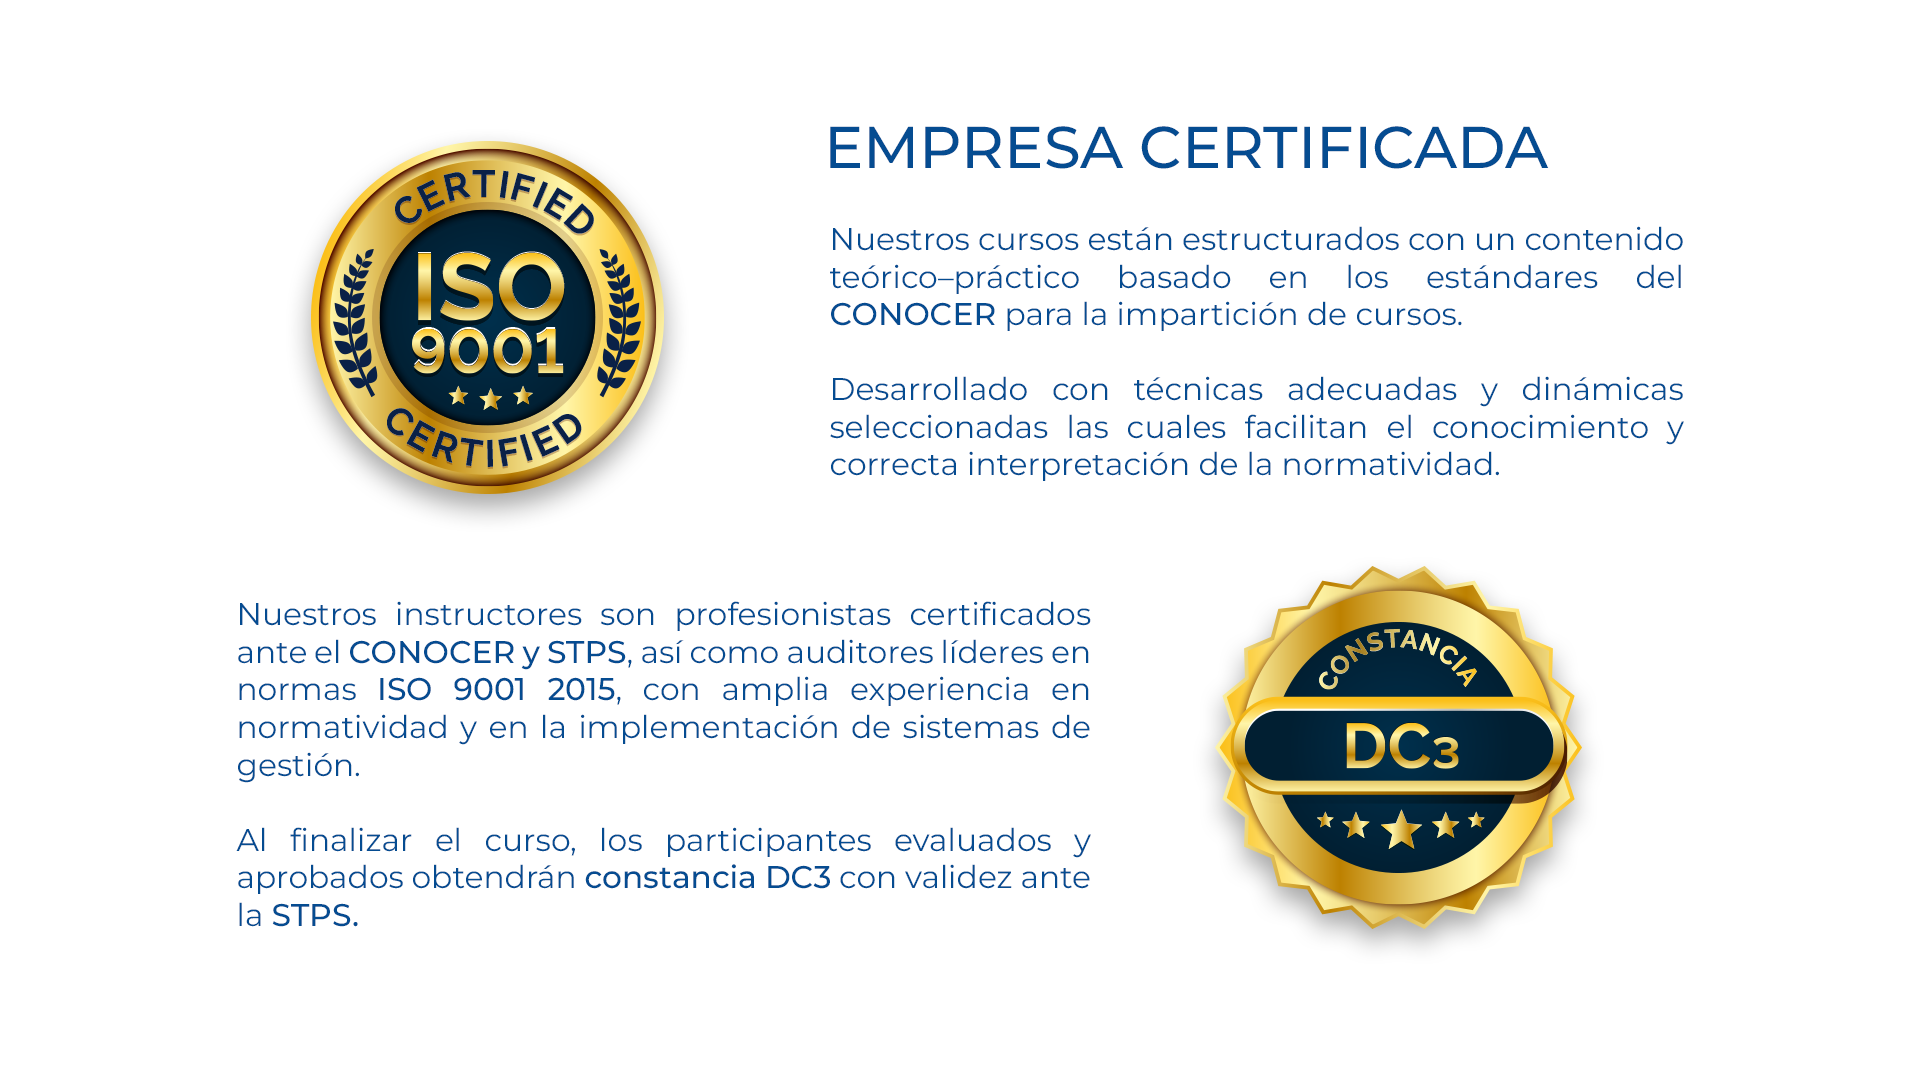 Certificación ISO 19001 2015